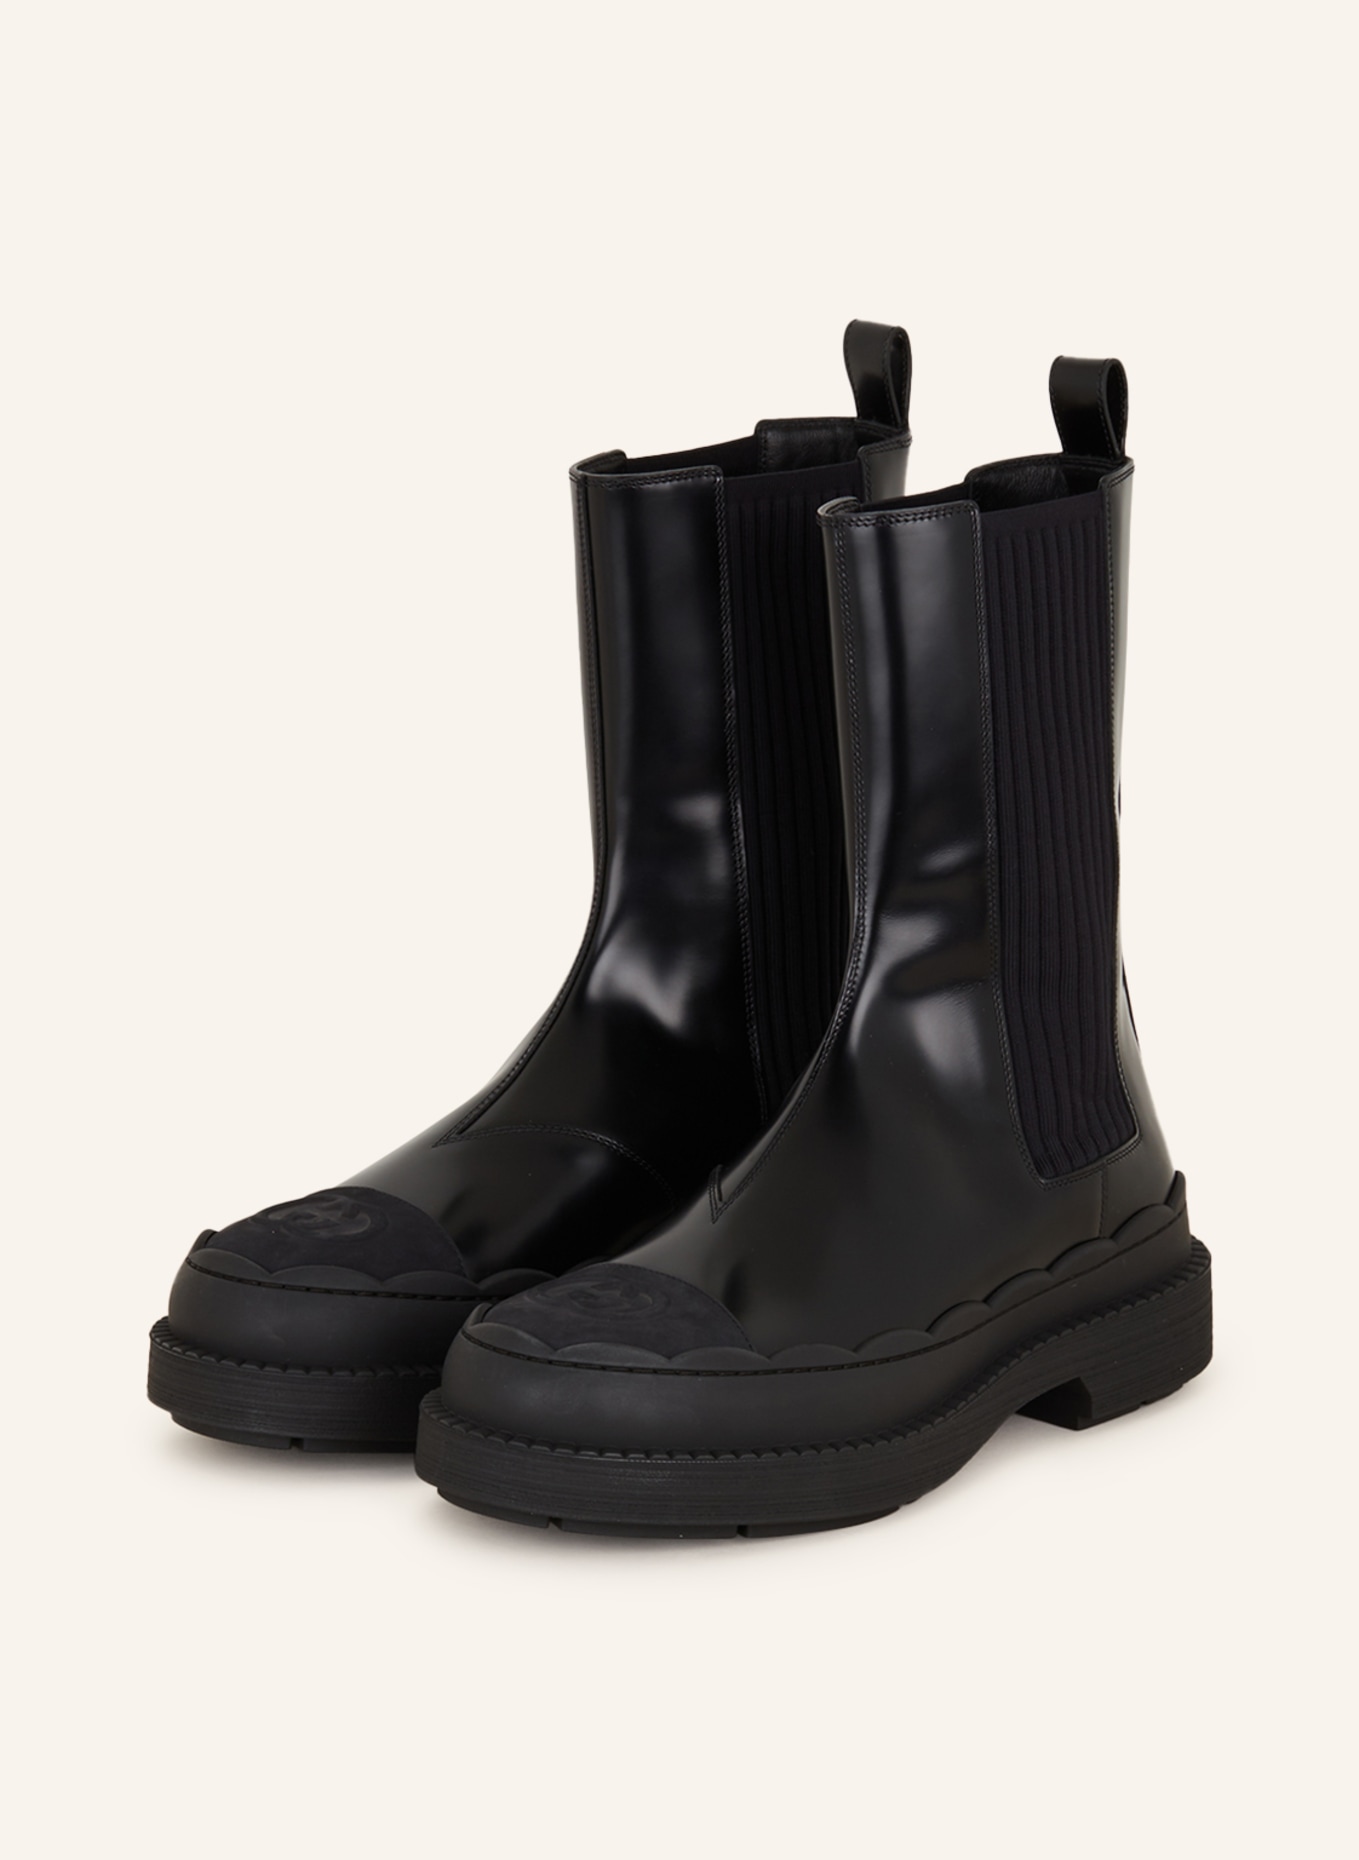 GUCCI Chelsea-Boots, Farbe: 1000 Black/Black/Black (Bild 1)